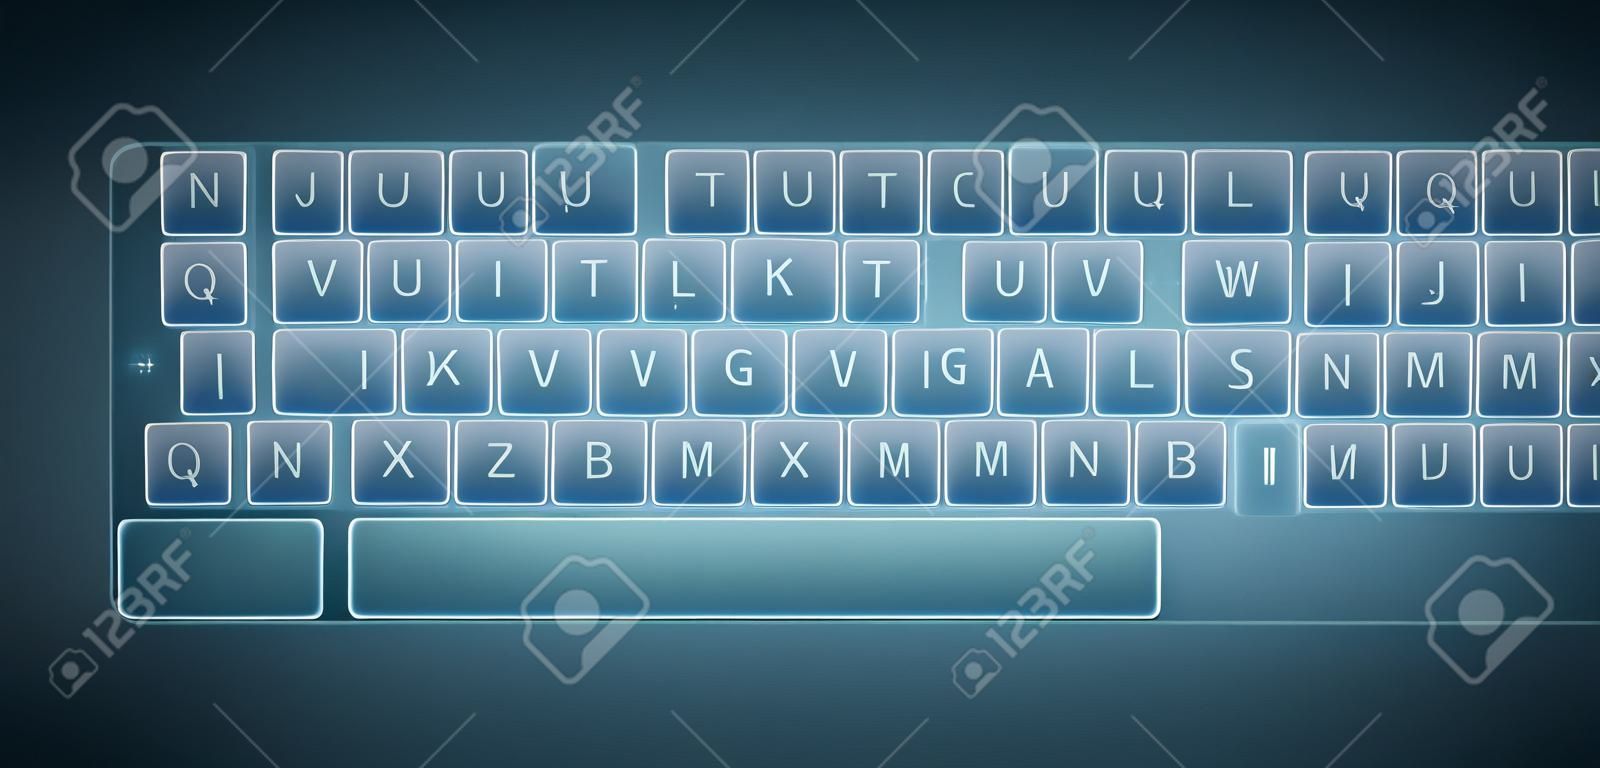 Виртуальная клавиатура для устройств с сенсорными экранами